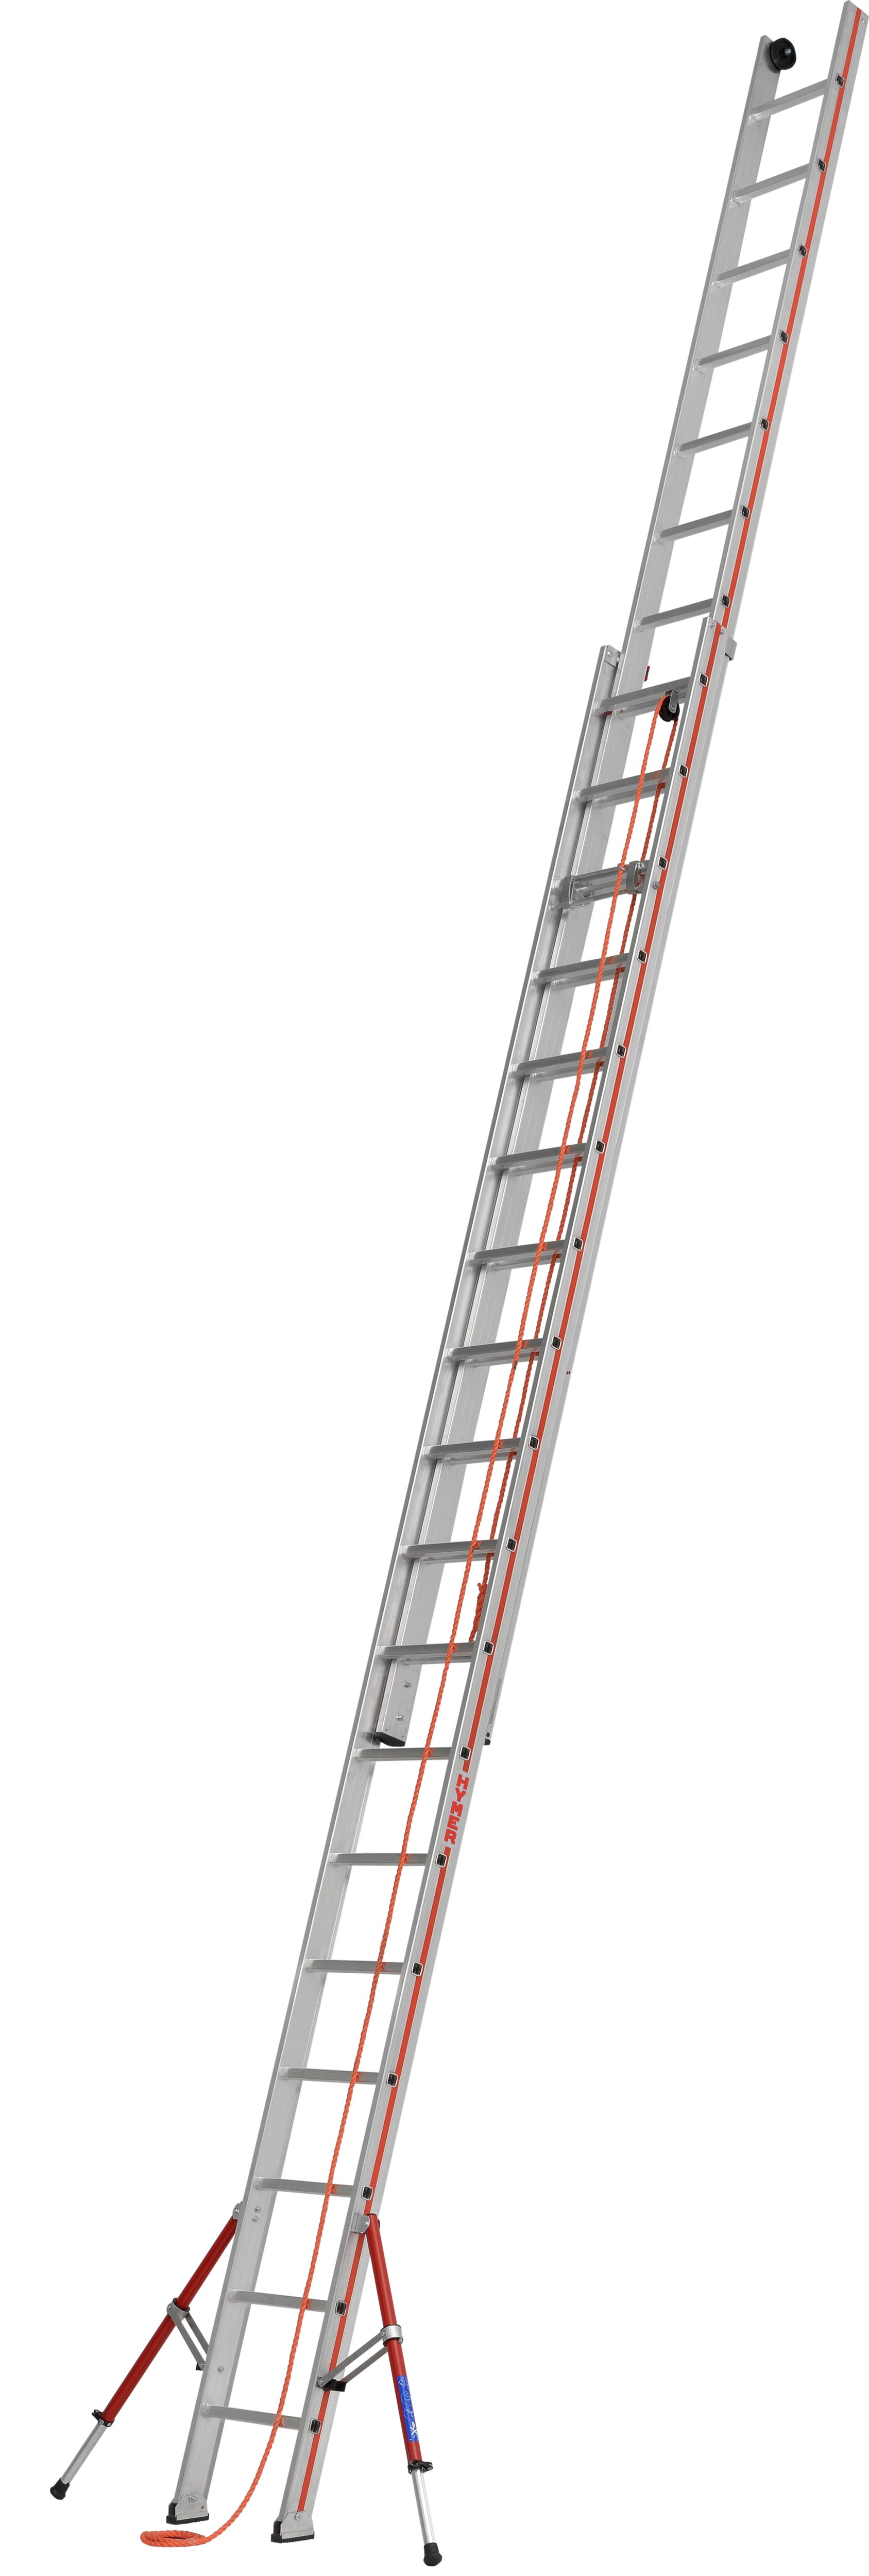 Hymer Seilzugleiter 2-teilig SC 60 Alu 2x18 Sprossen Leiter mit ausklappbaren Auslegern - Profiprogramm (HY-605136) Bild-01